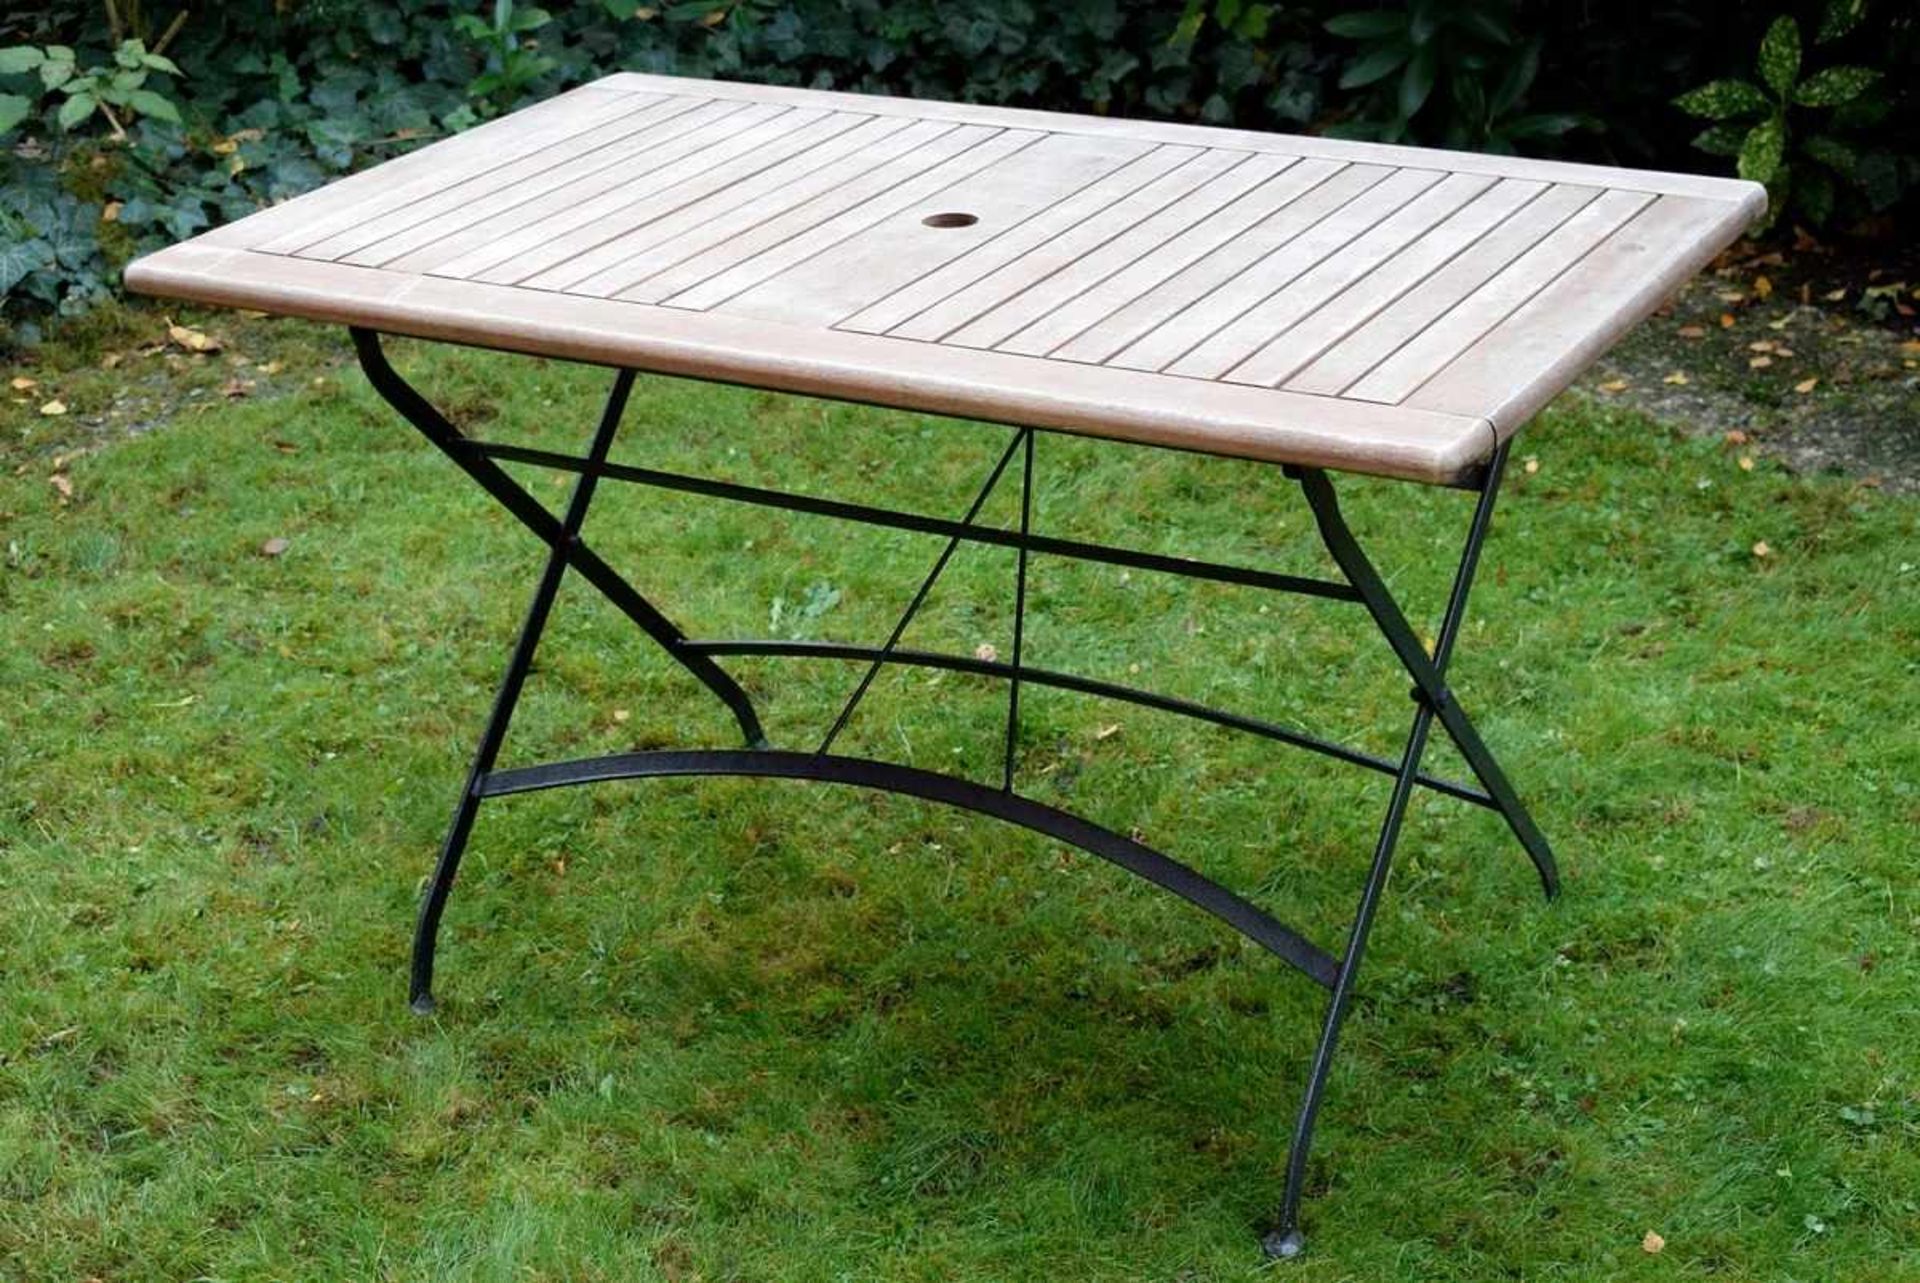 Moderner Gartentisch mit Schirmaussparung, Holz/Metall, 75x122x75cmModern garden table with umbrella